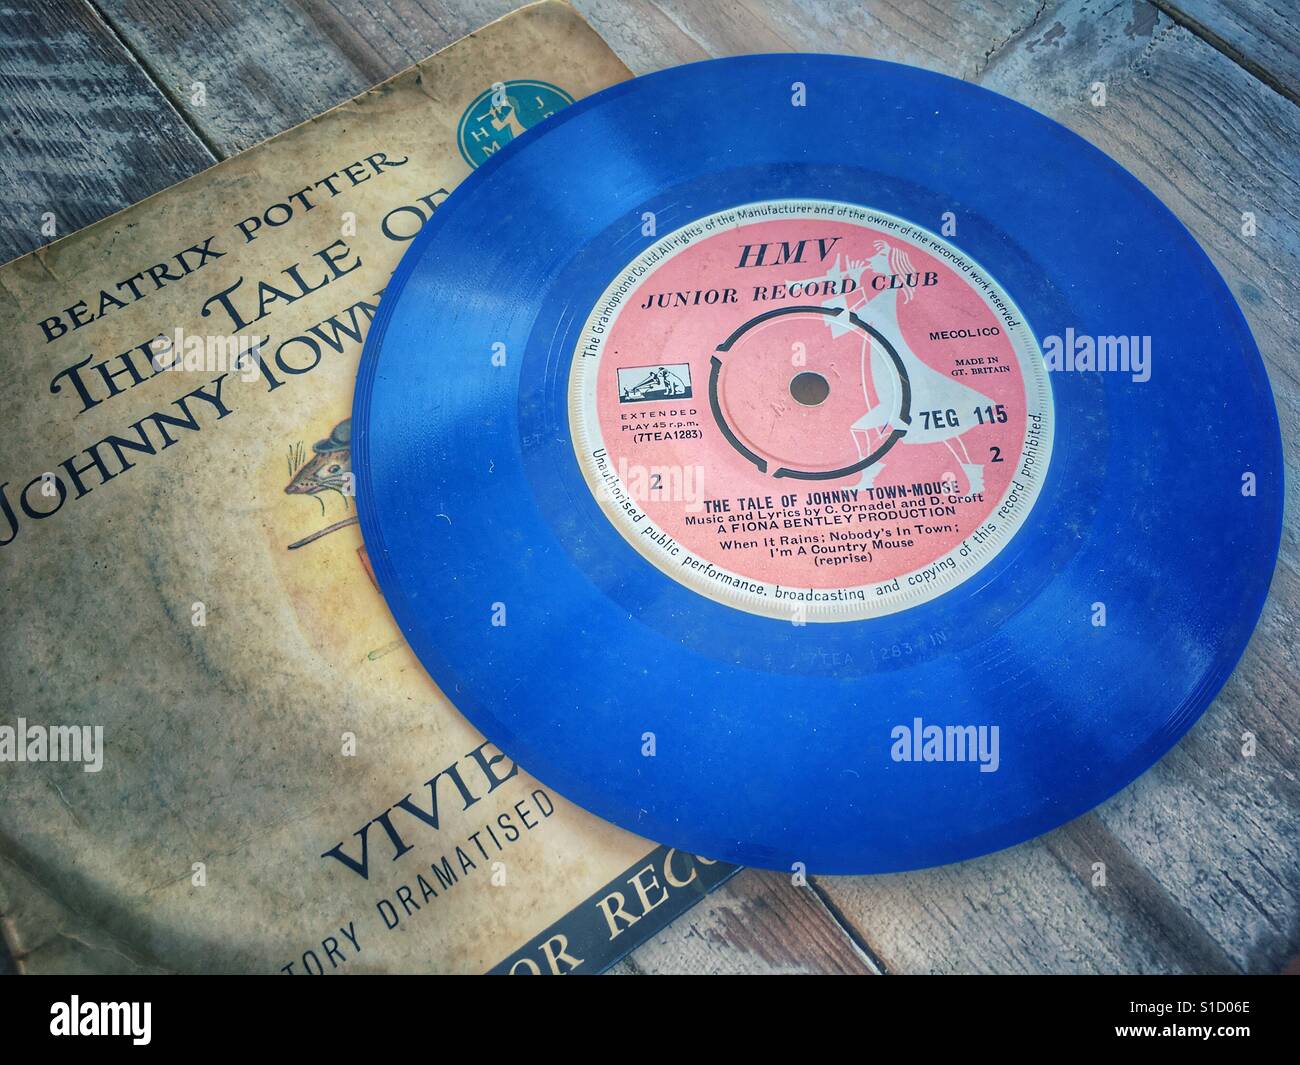 HMV Record Junior Club, il racconto di Johnny Town Mouse a Beatrix Potter, letto da Vivien Leigh. Anni sessanta blue vinil 45rpm record. Foto Stock